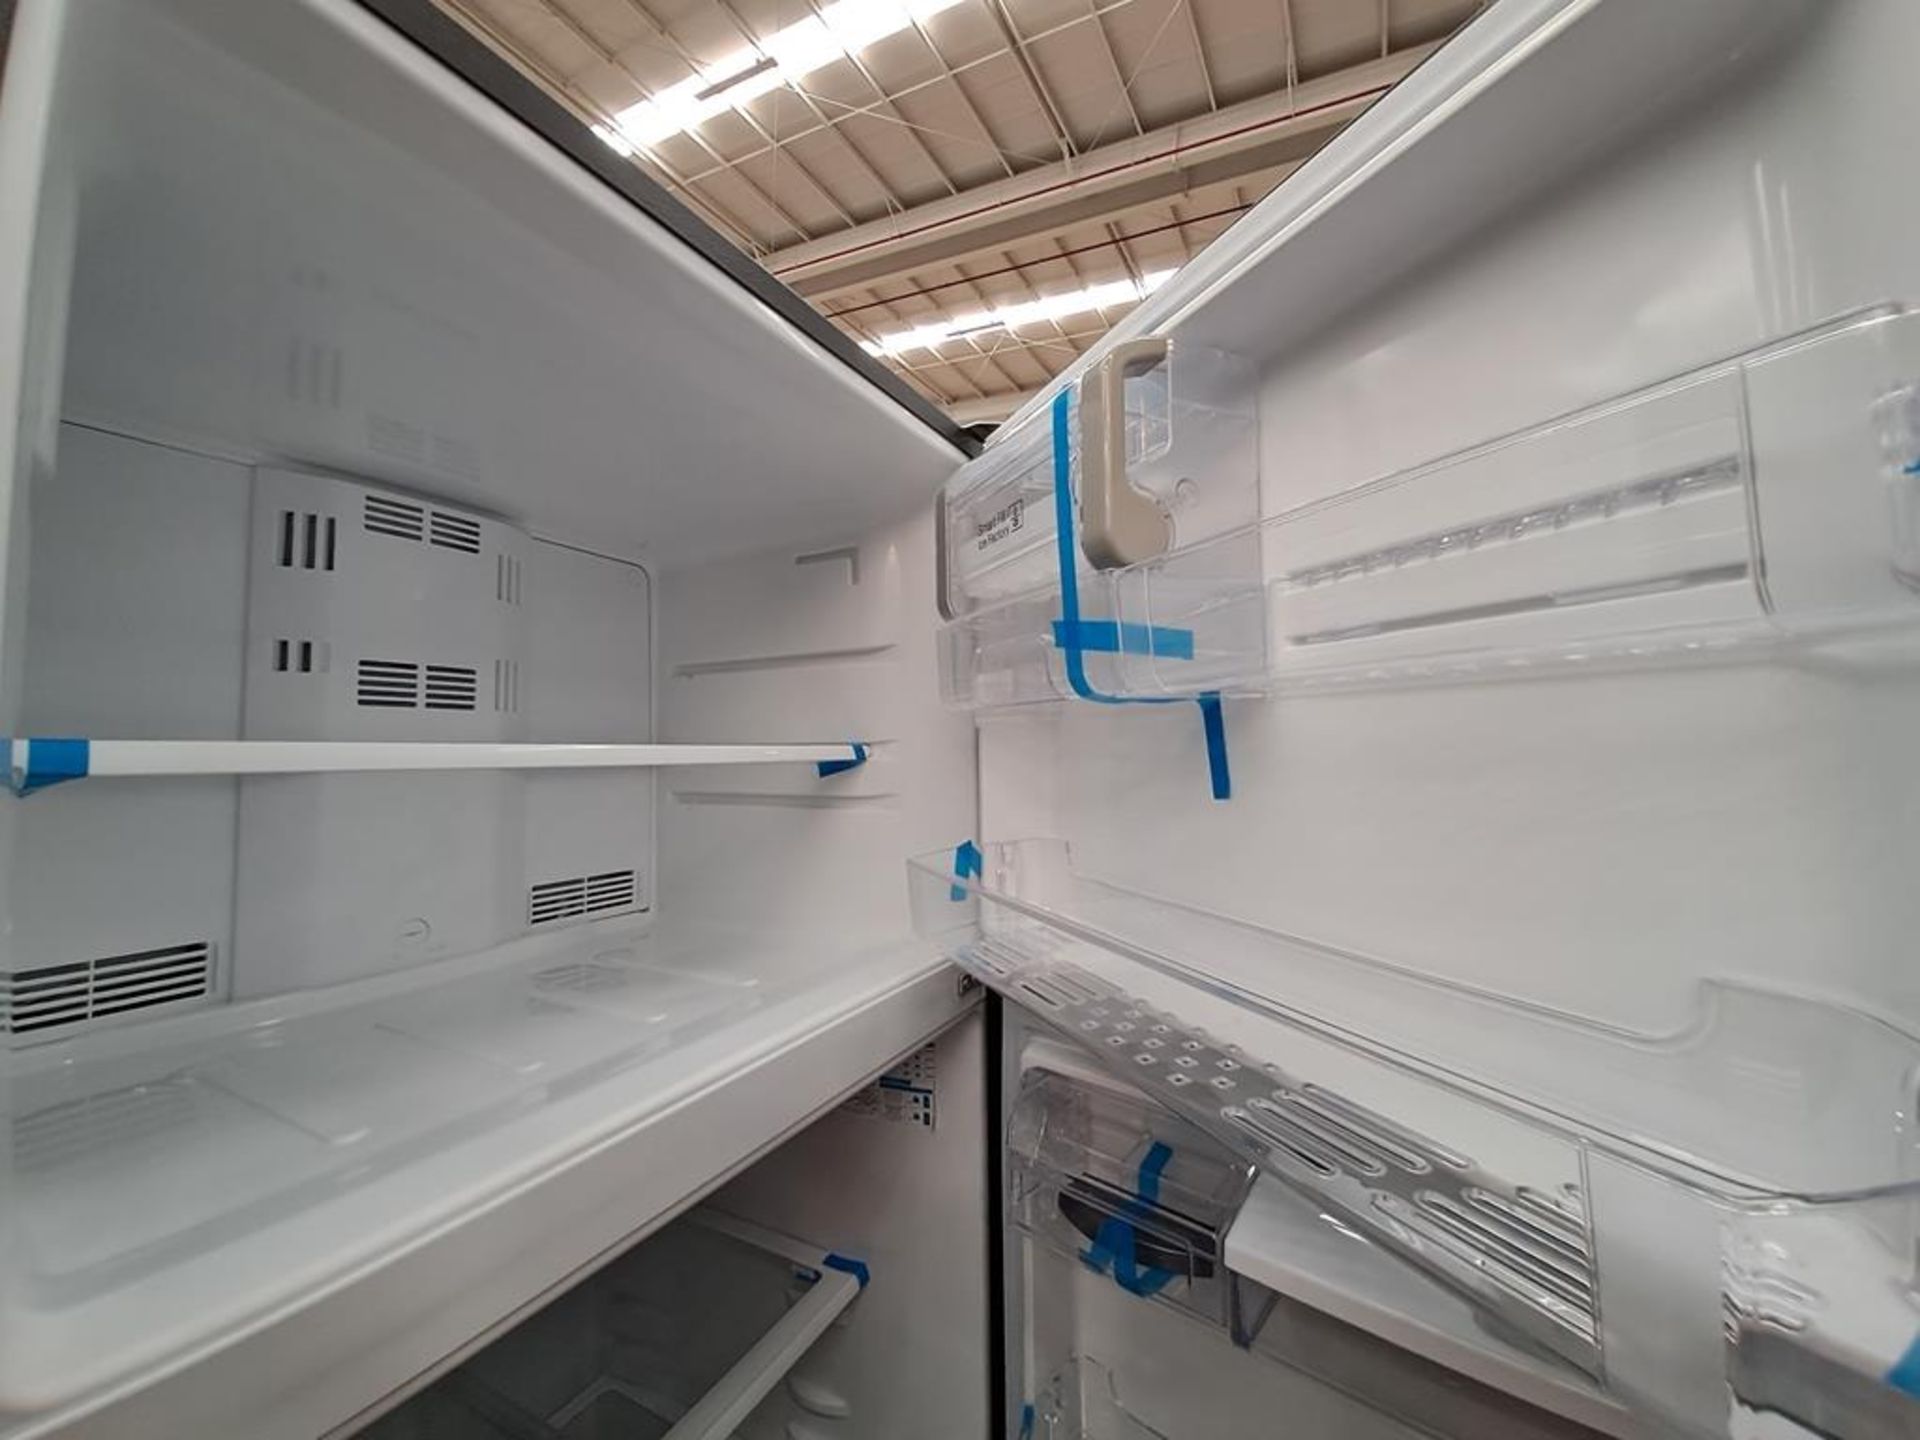 (Equipo nuevo) Lote de 2 refrigeradores contiene: 1 refrigerador con dispensador de agua Marca MABE - Image 6 of 9